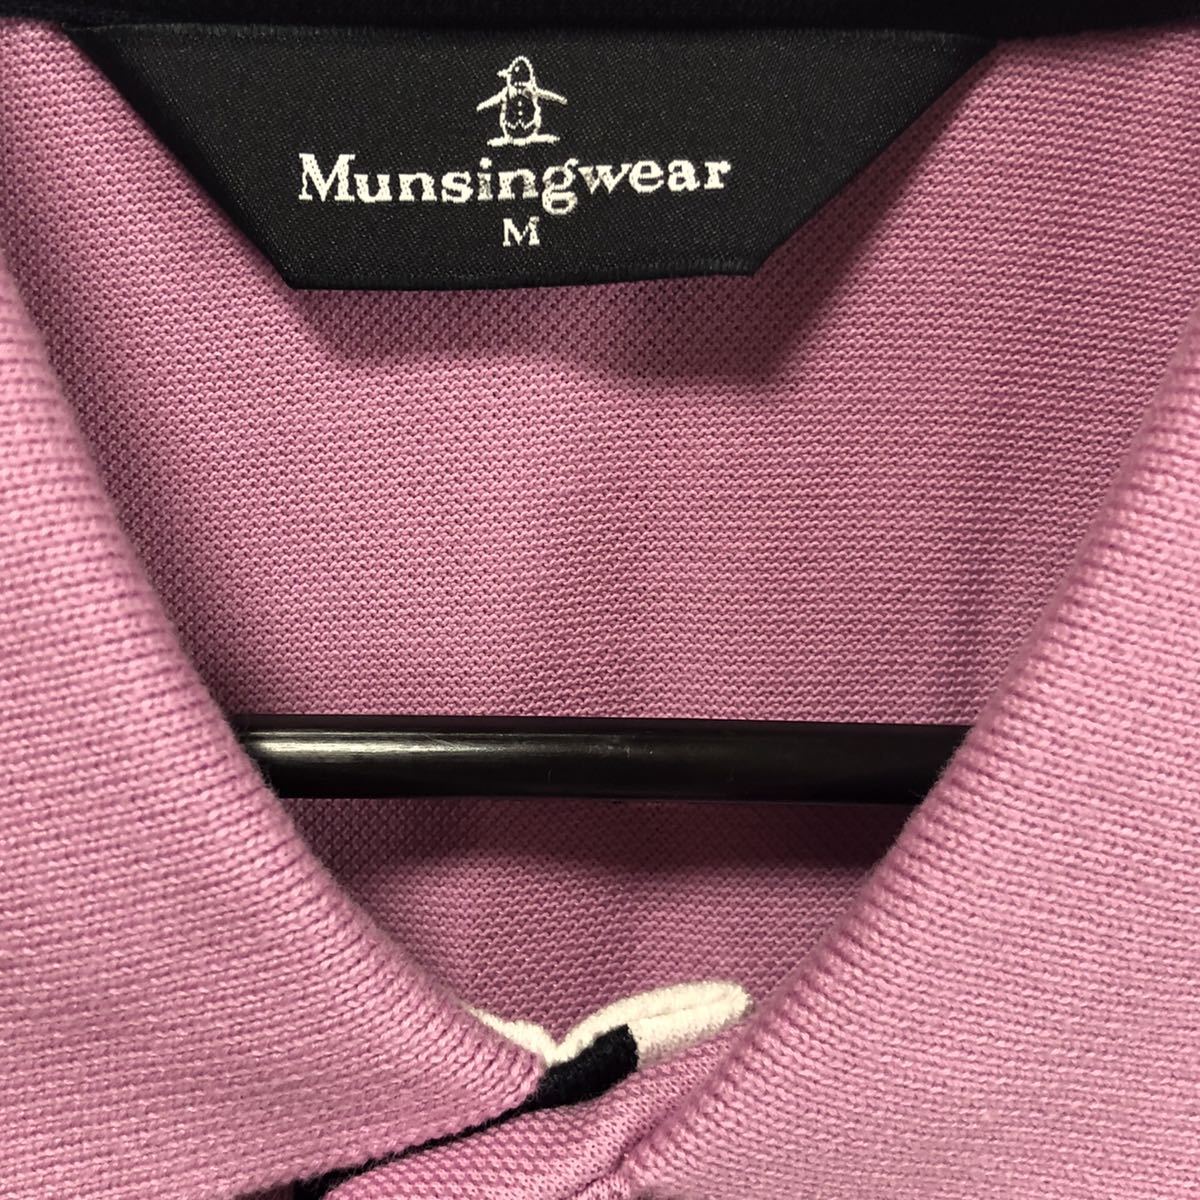 [Munsingwear] Munsingwear wear Golf wear polo-shirt with short sleeves purple M tag attaching! free shipping! with translation 